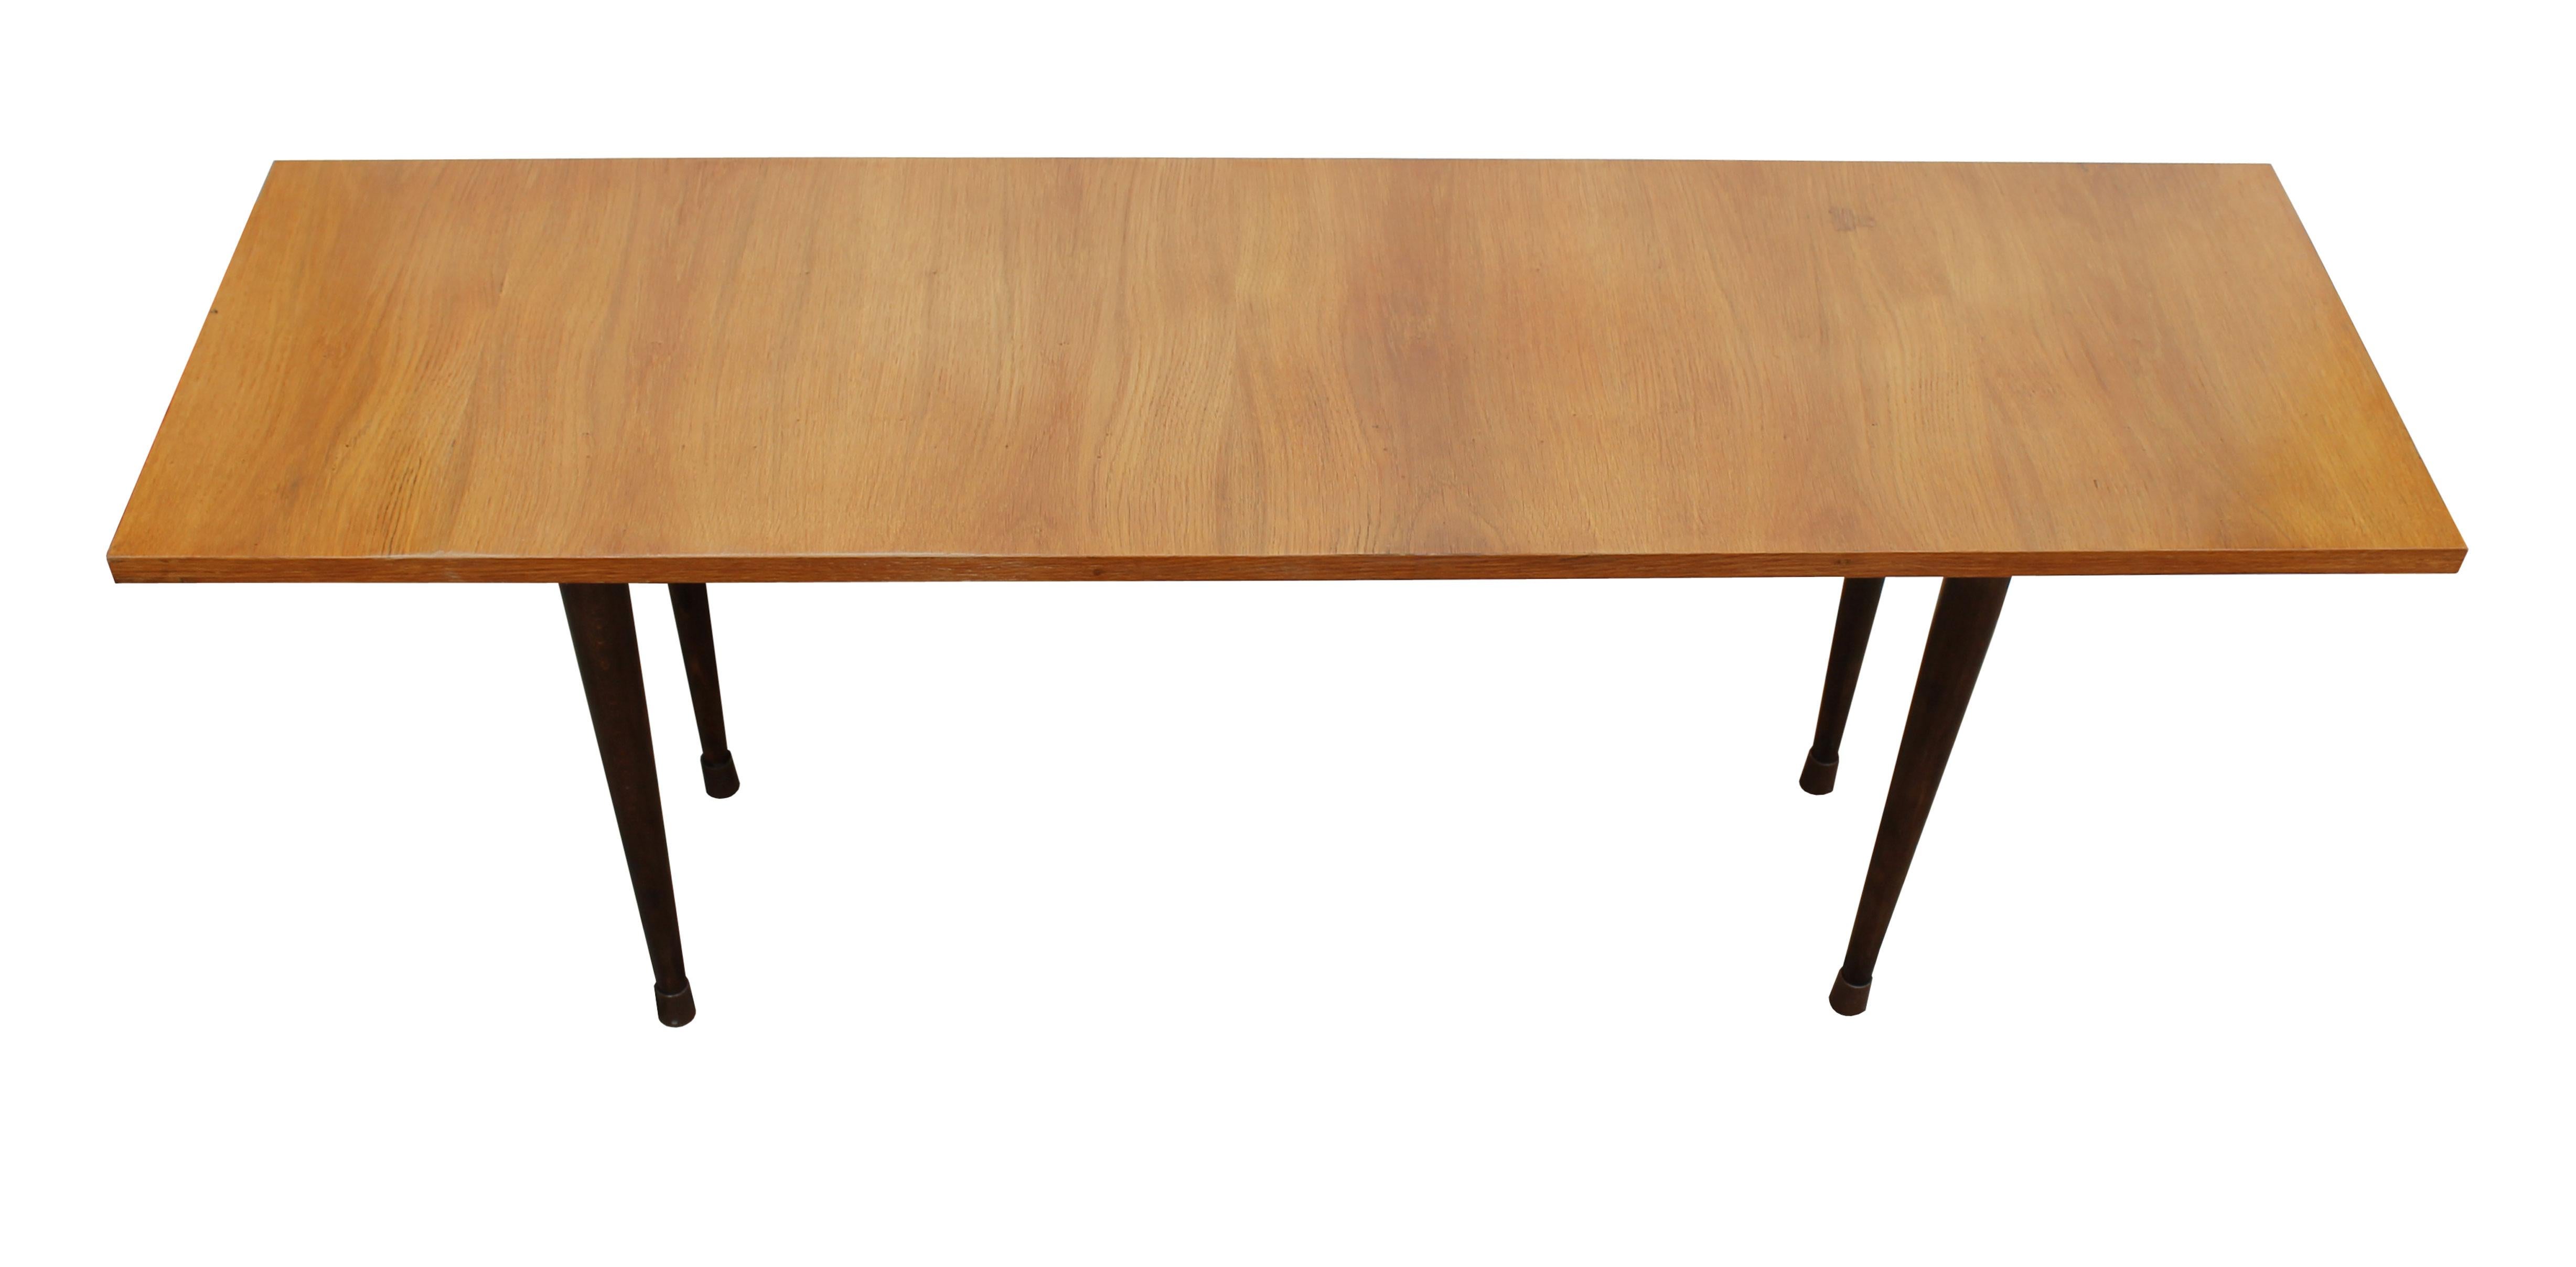 Une longue table basse en bois conçue dans le style The Modern Scandinavian, mais produite en Tchécoslovaquie à la fin des années 1960.

Dans les années 1960, le design des meubles tchèques a été largement influencé par le design scandinave. Cette